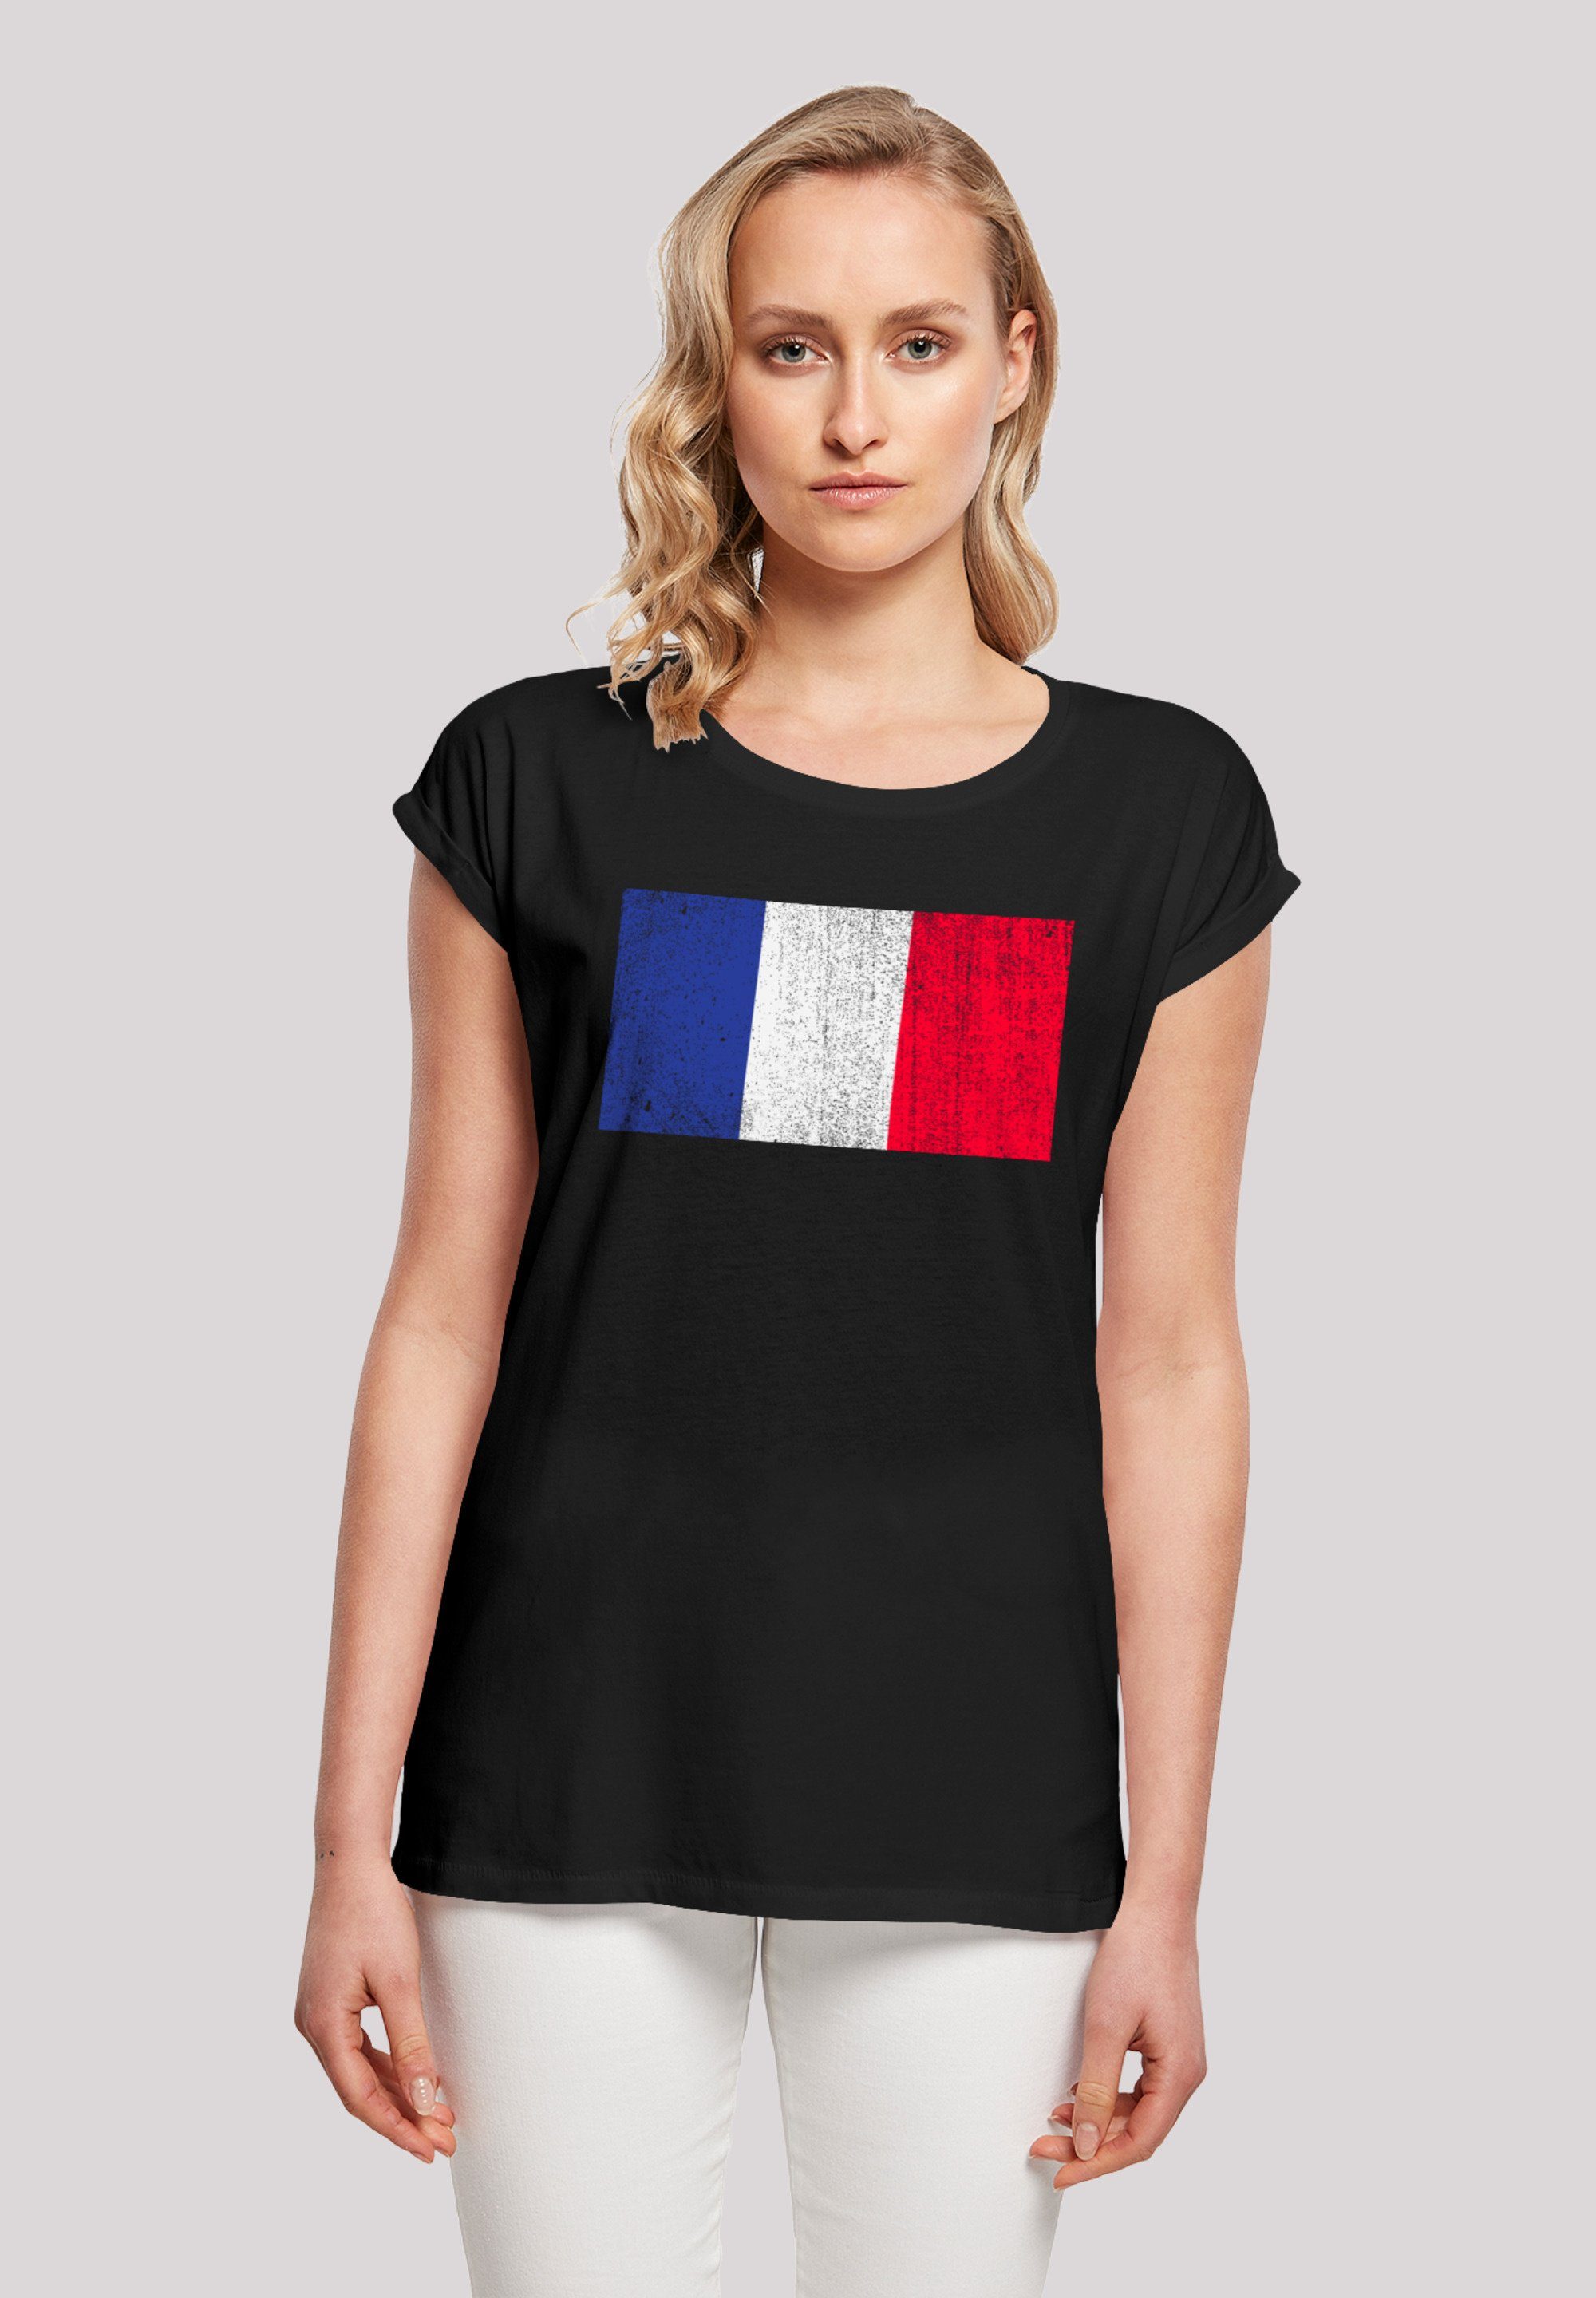 Günstiger als im Laden! F4NT4STIC T-Shirt France Frankreich Print, weicher Baumwollstoff distressed Tragekomfort Sehr hohem Flagge mit